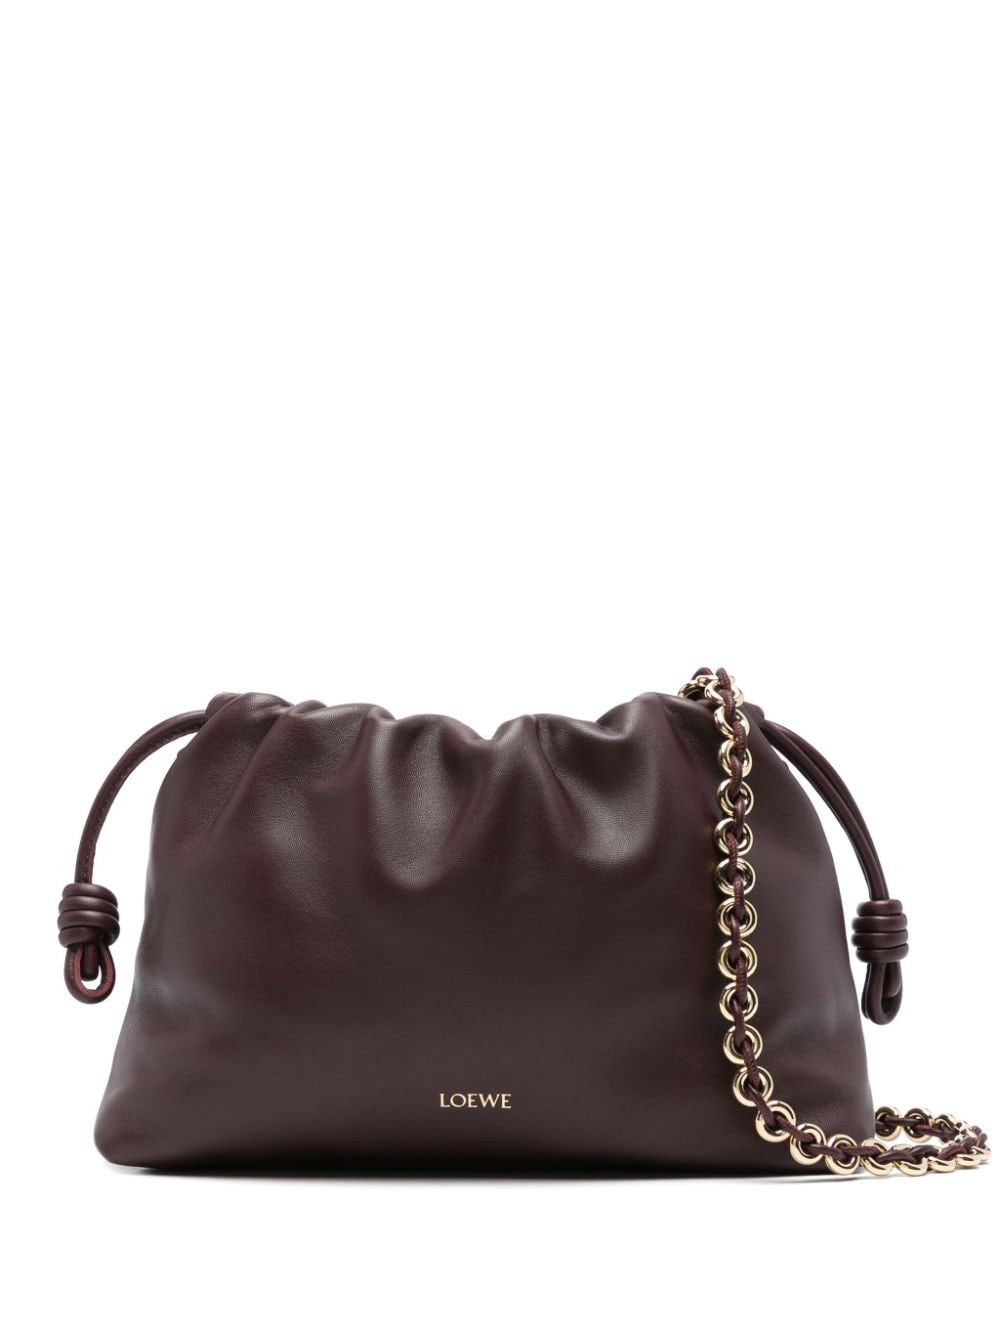 Loewe LOEWE- Flamenco Leather Clutch Bag